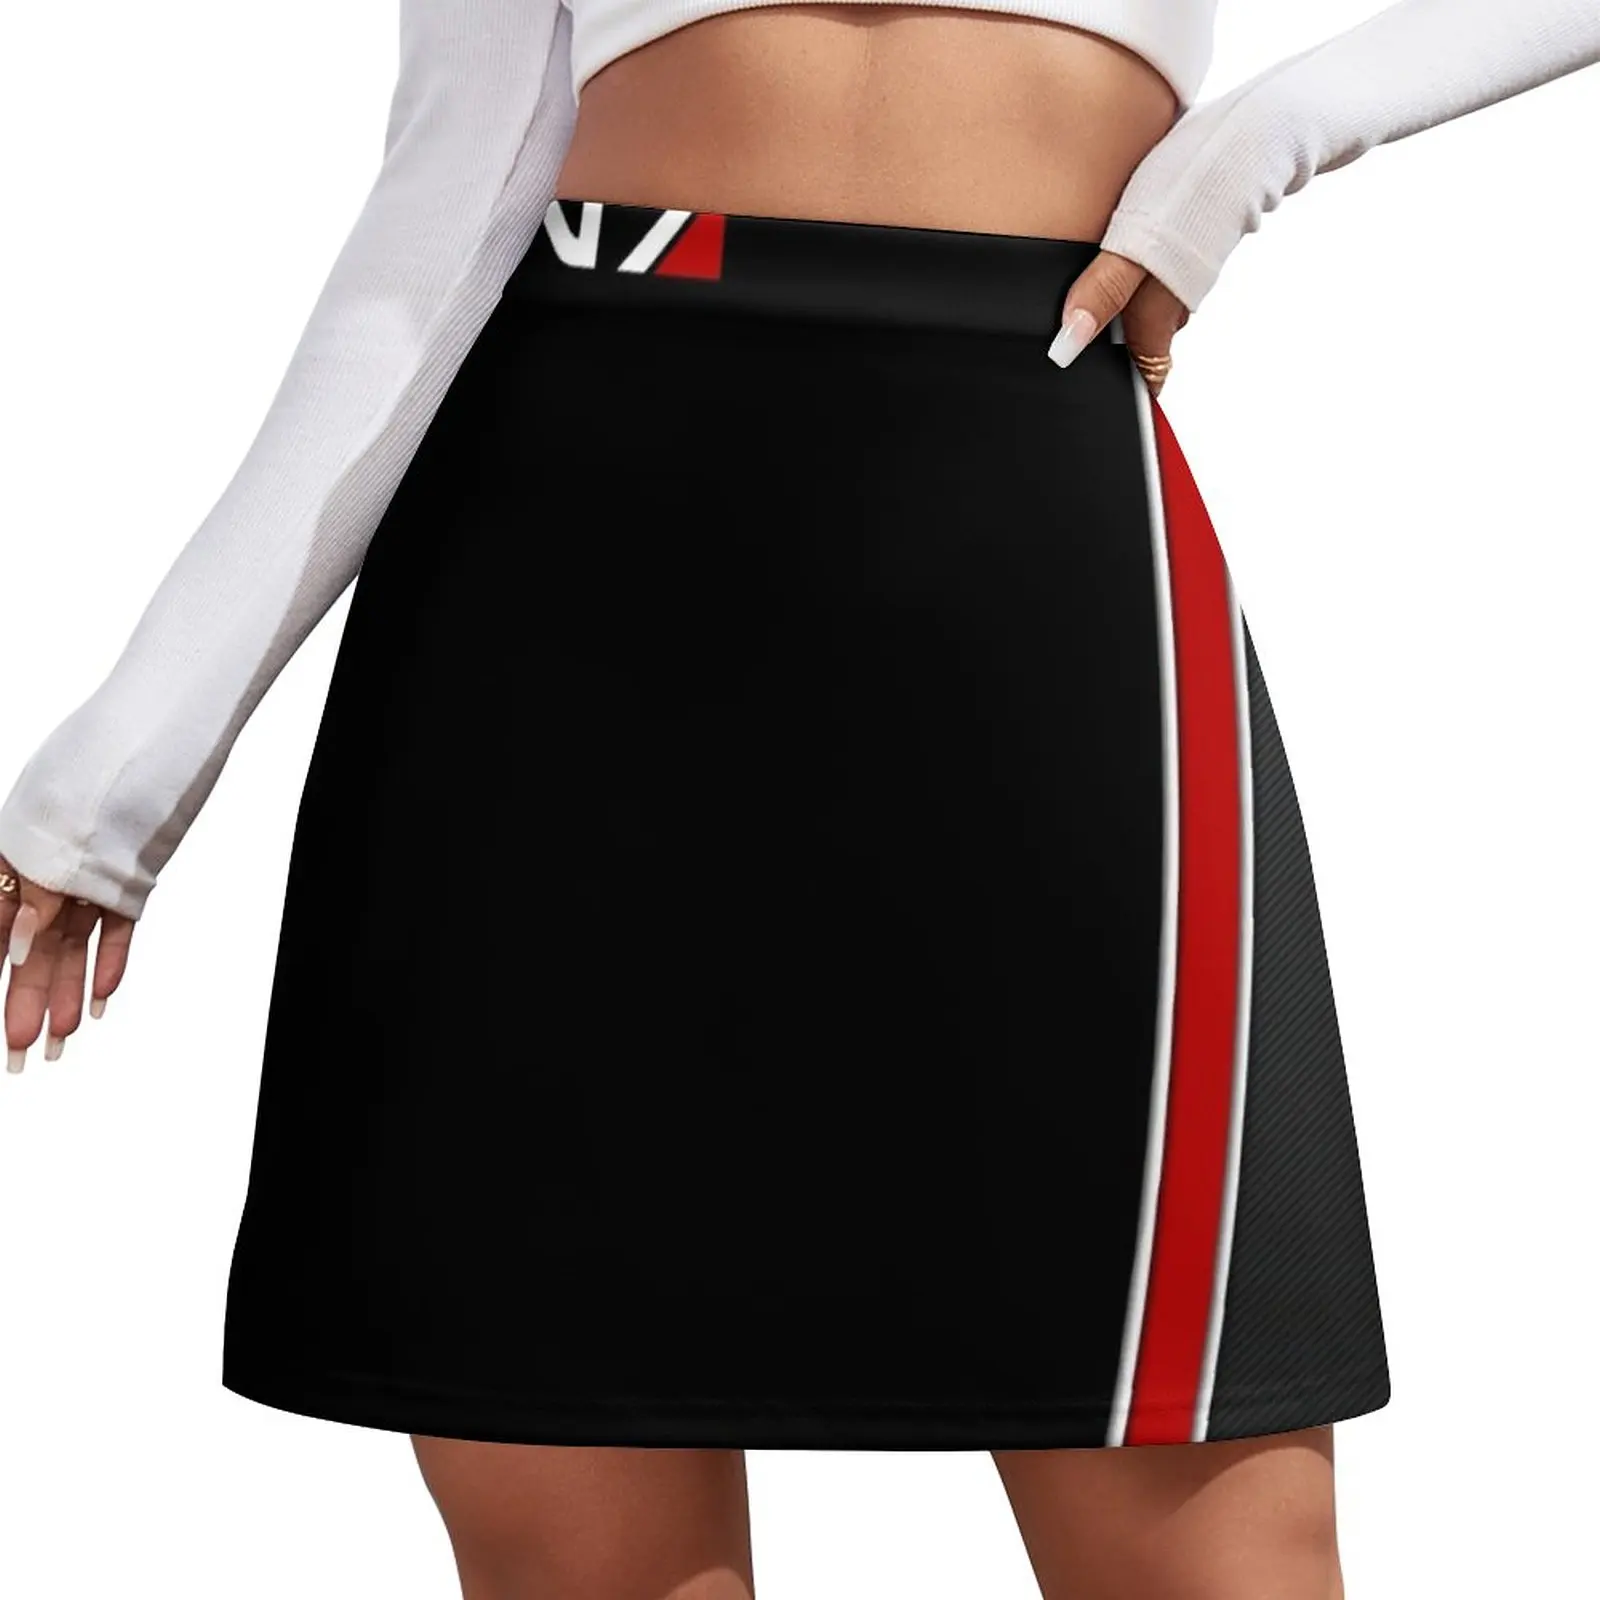 N7 Mass effect emblem! Mini Skirt Womens dresses summer clothes Skirt shorts mass effect том 1 уолтерс м